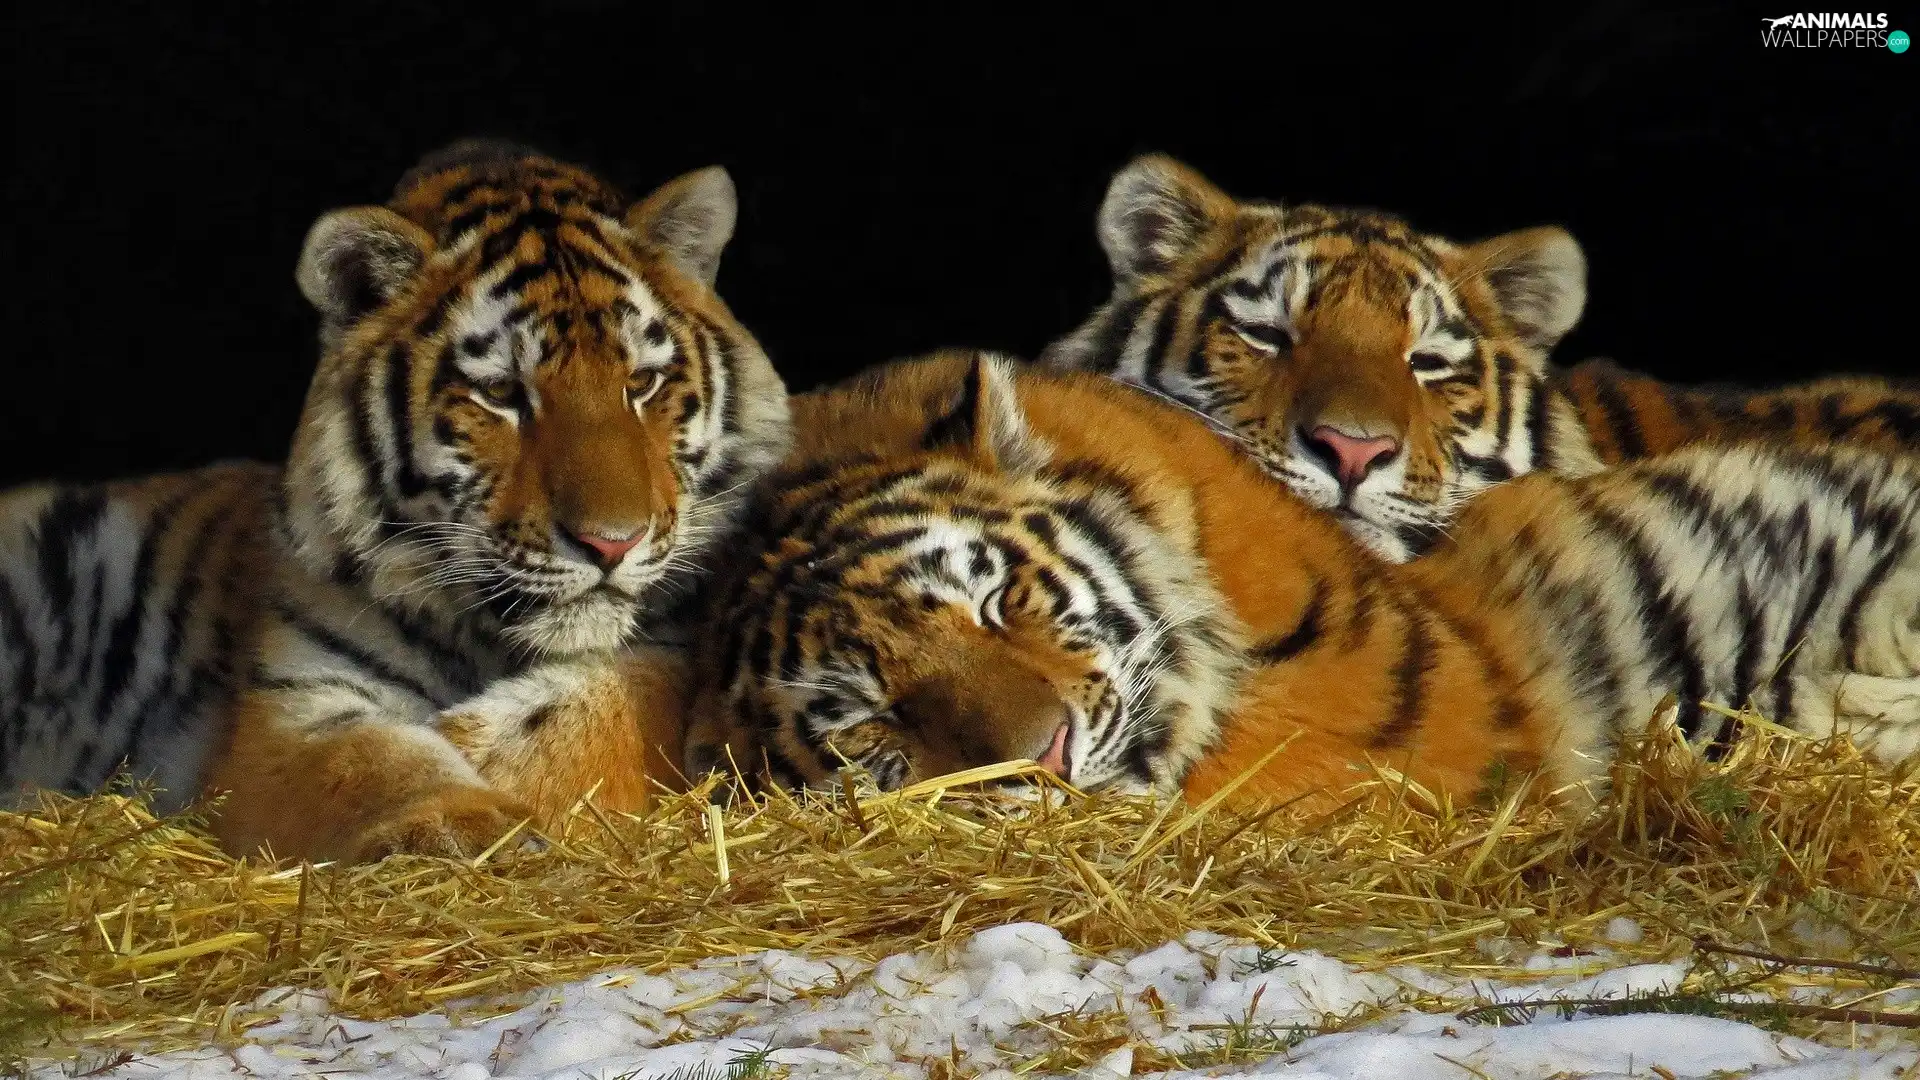 Three, grass, snow, tigress